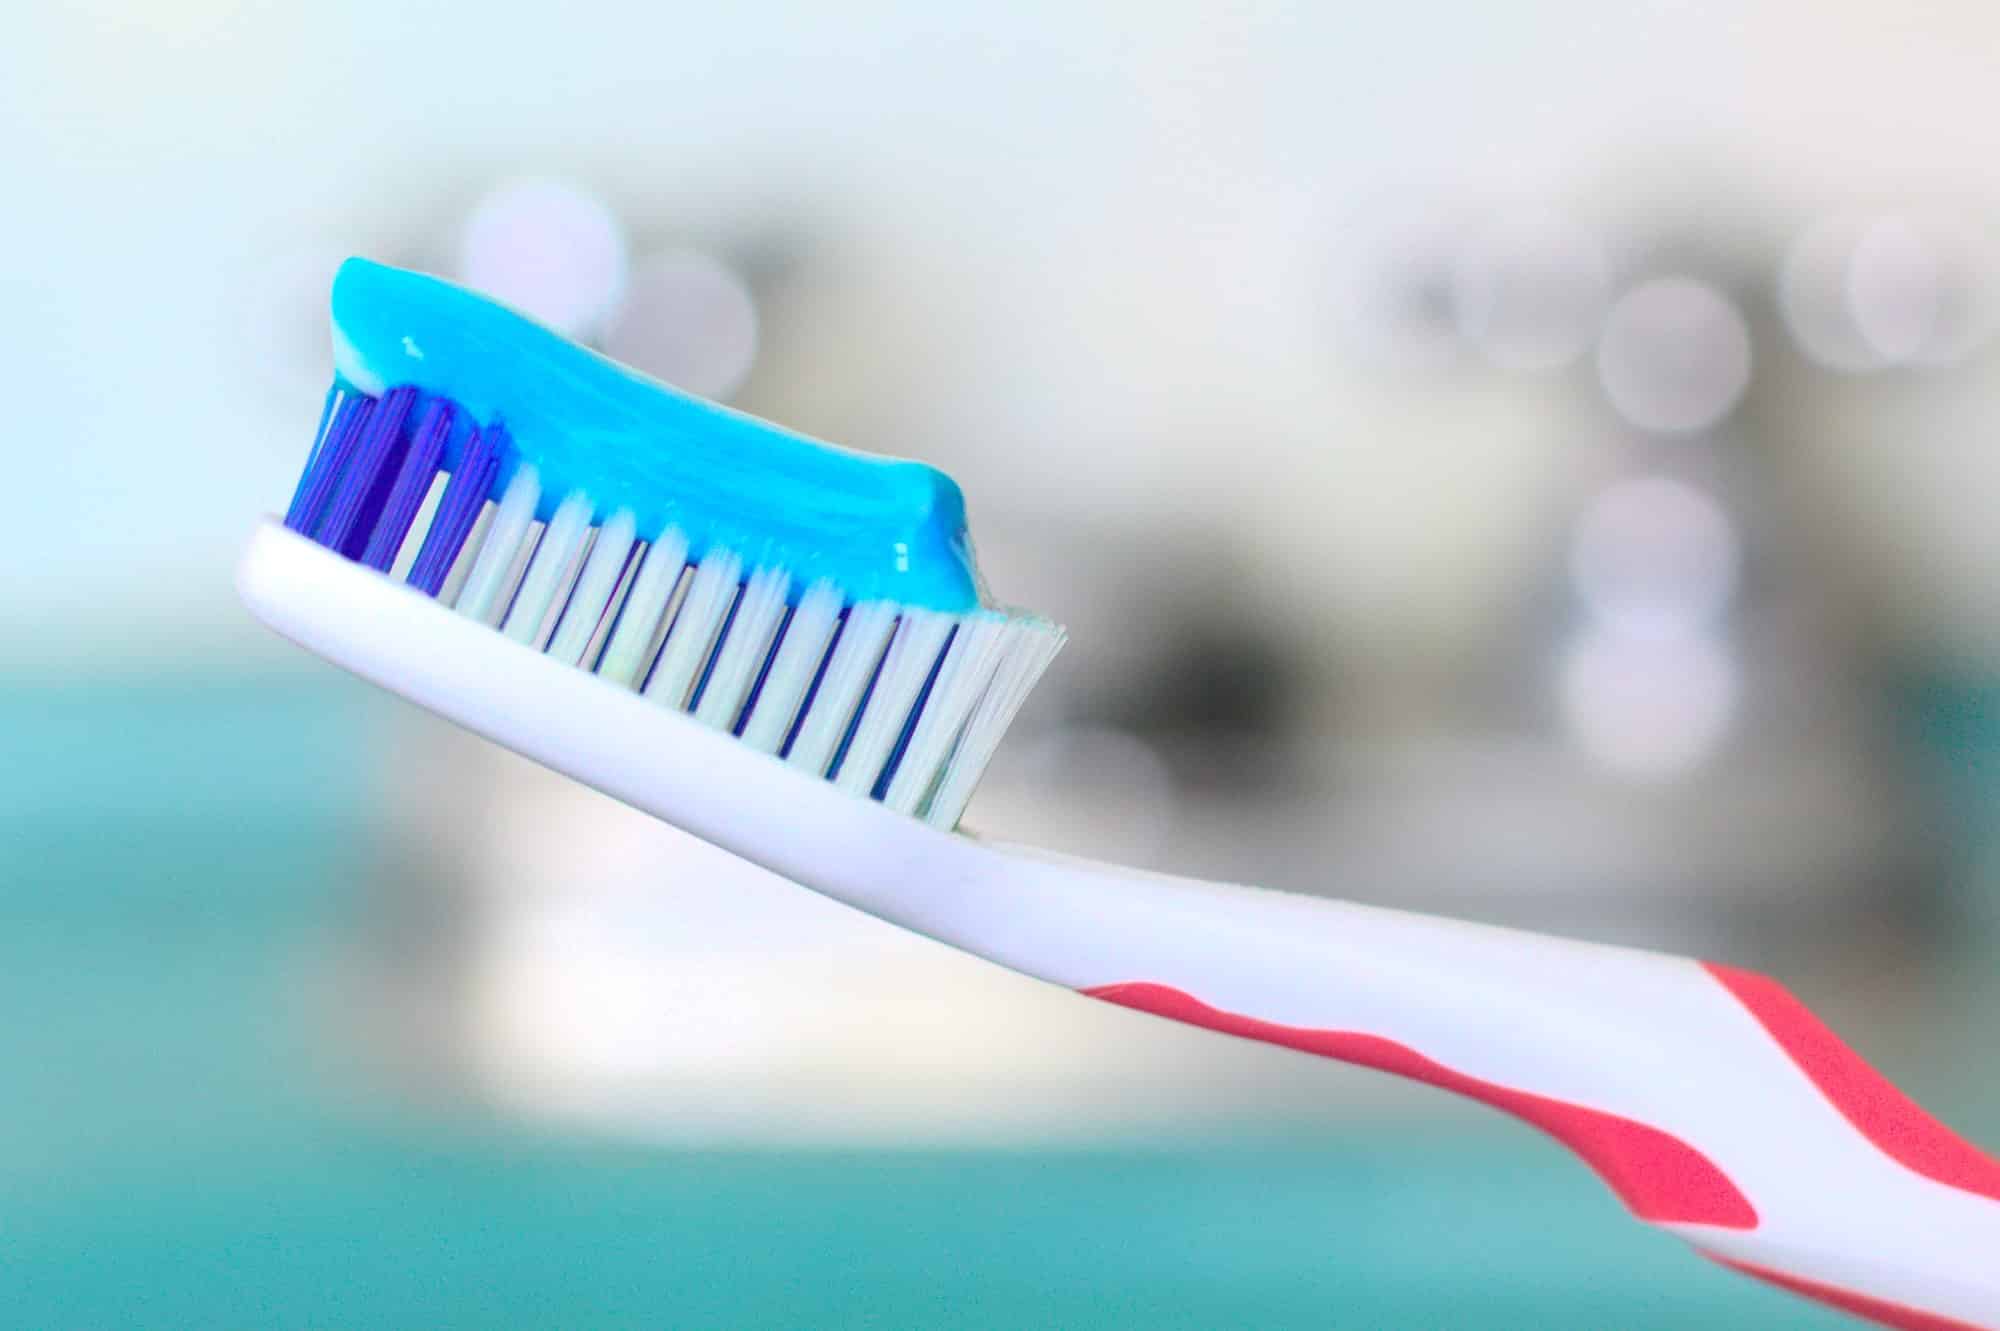 Les 4 utilisations surprenantes du dentifrice pour nettoyer votre maison